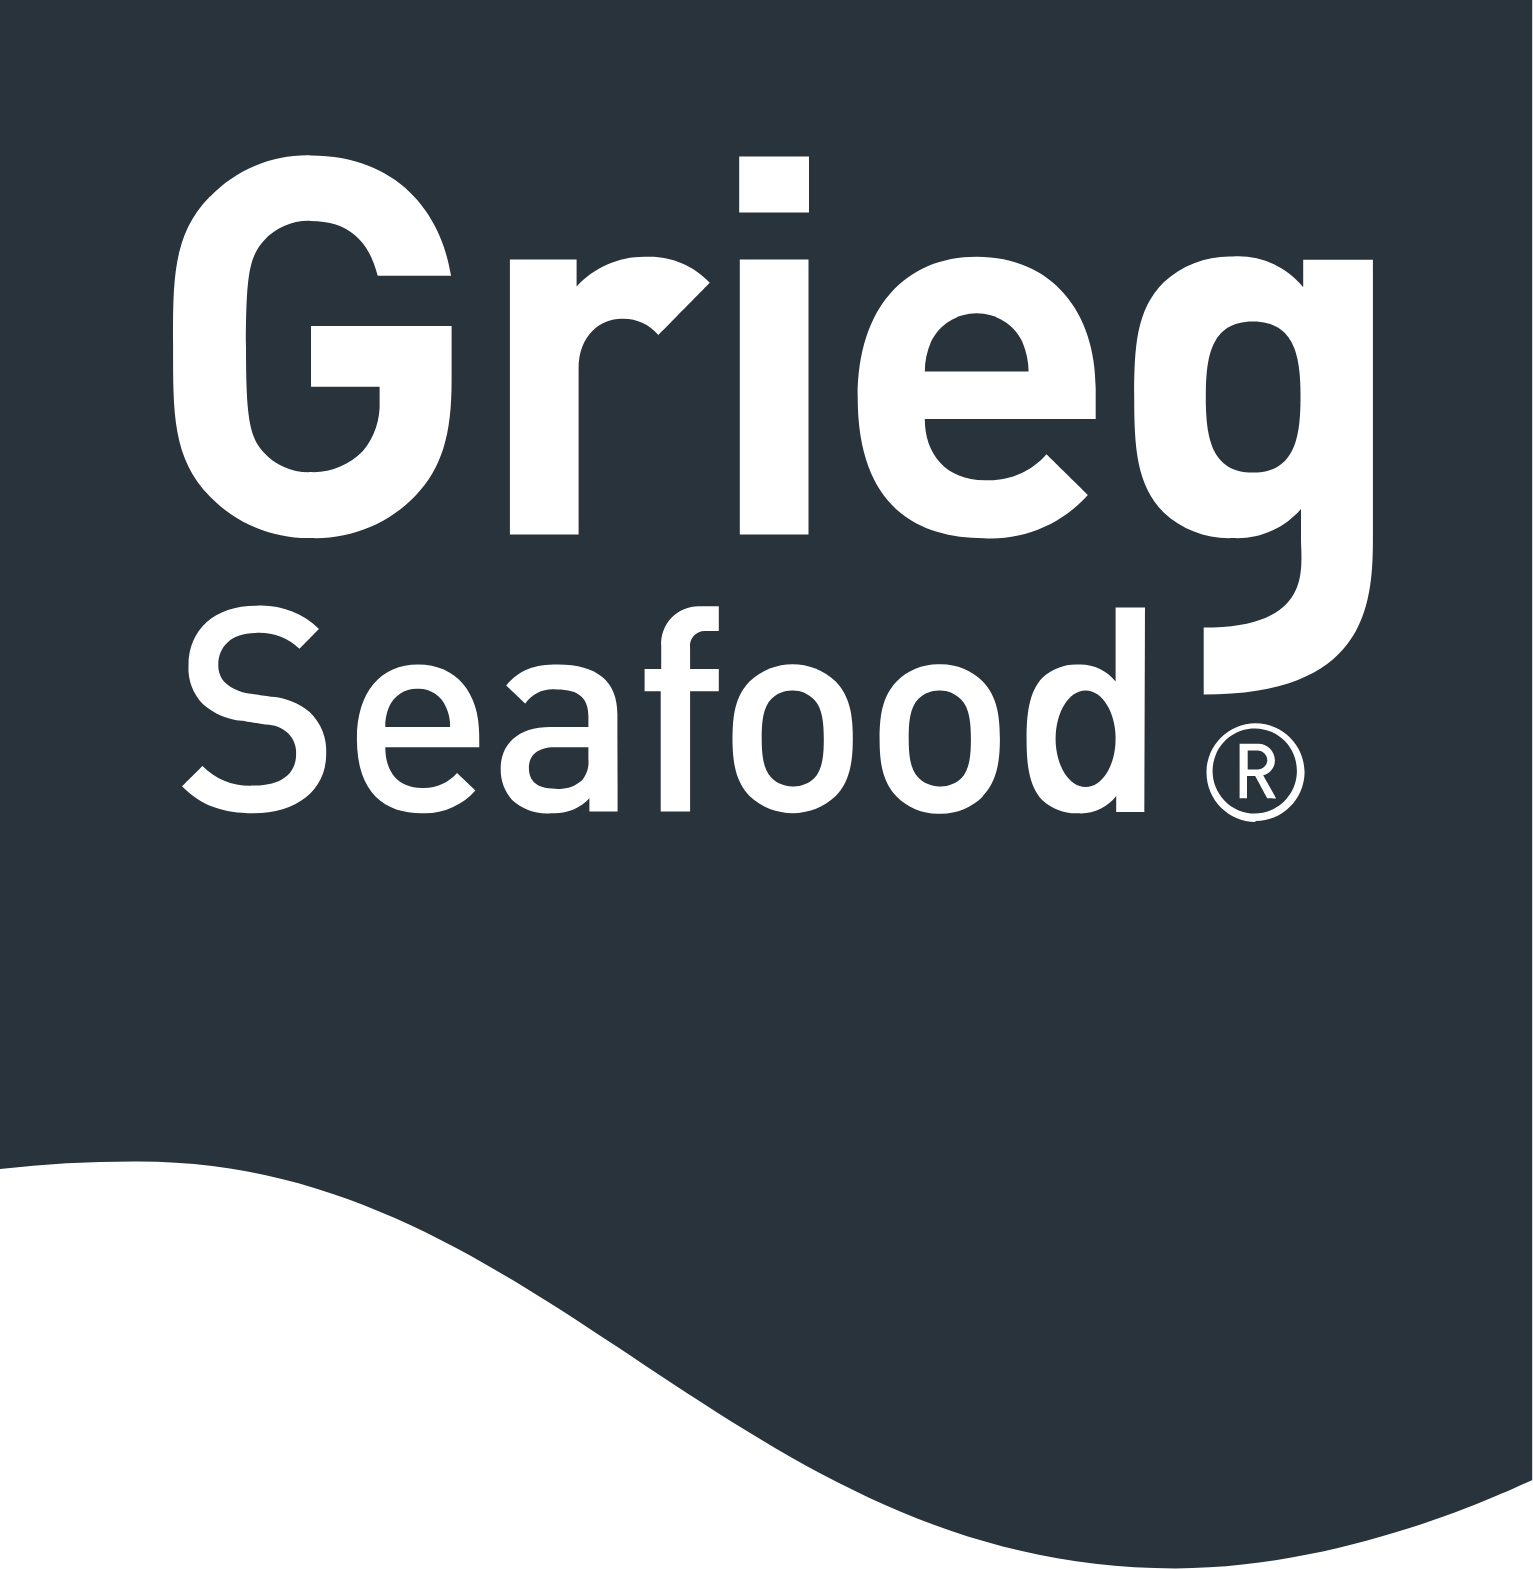 Grieg Seafood logo (transparent PNG)